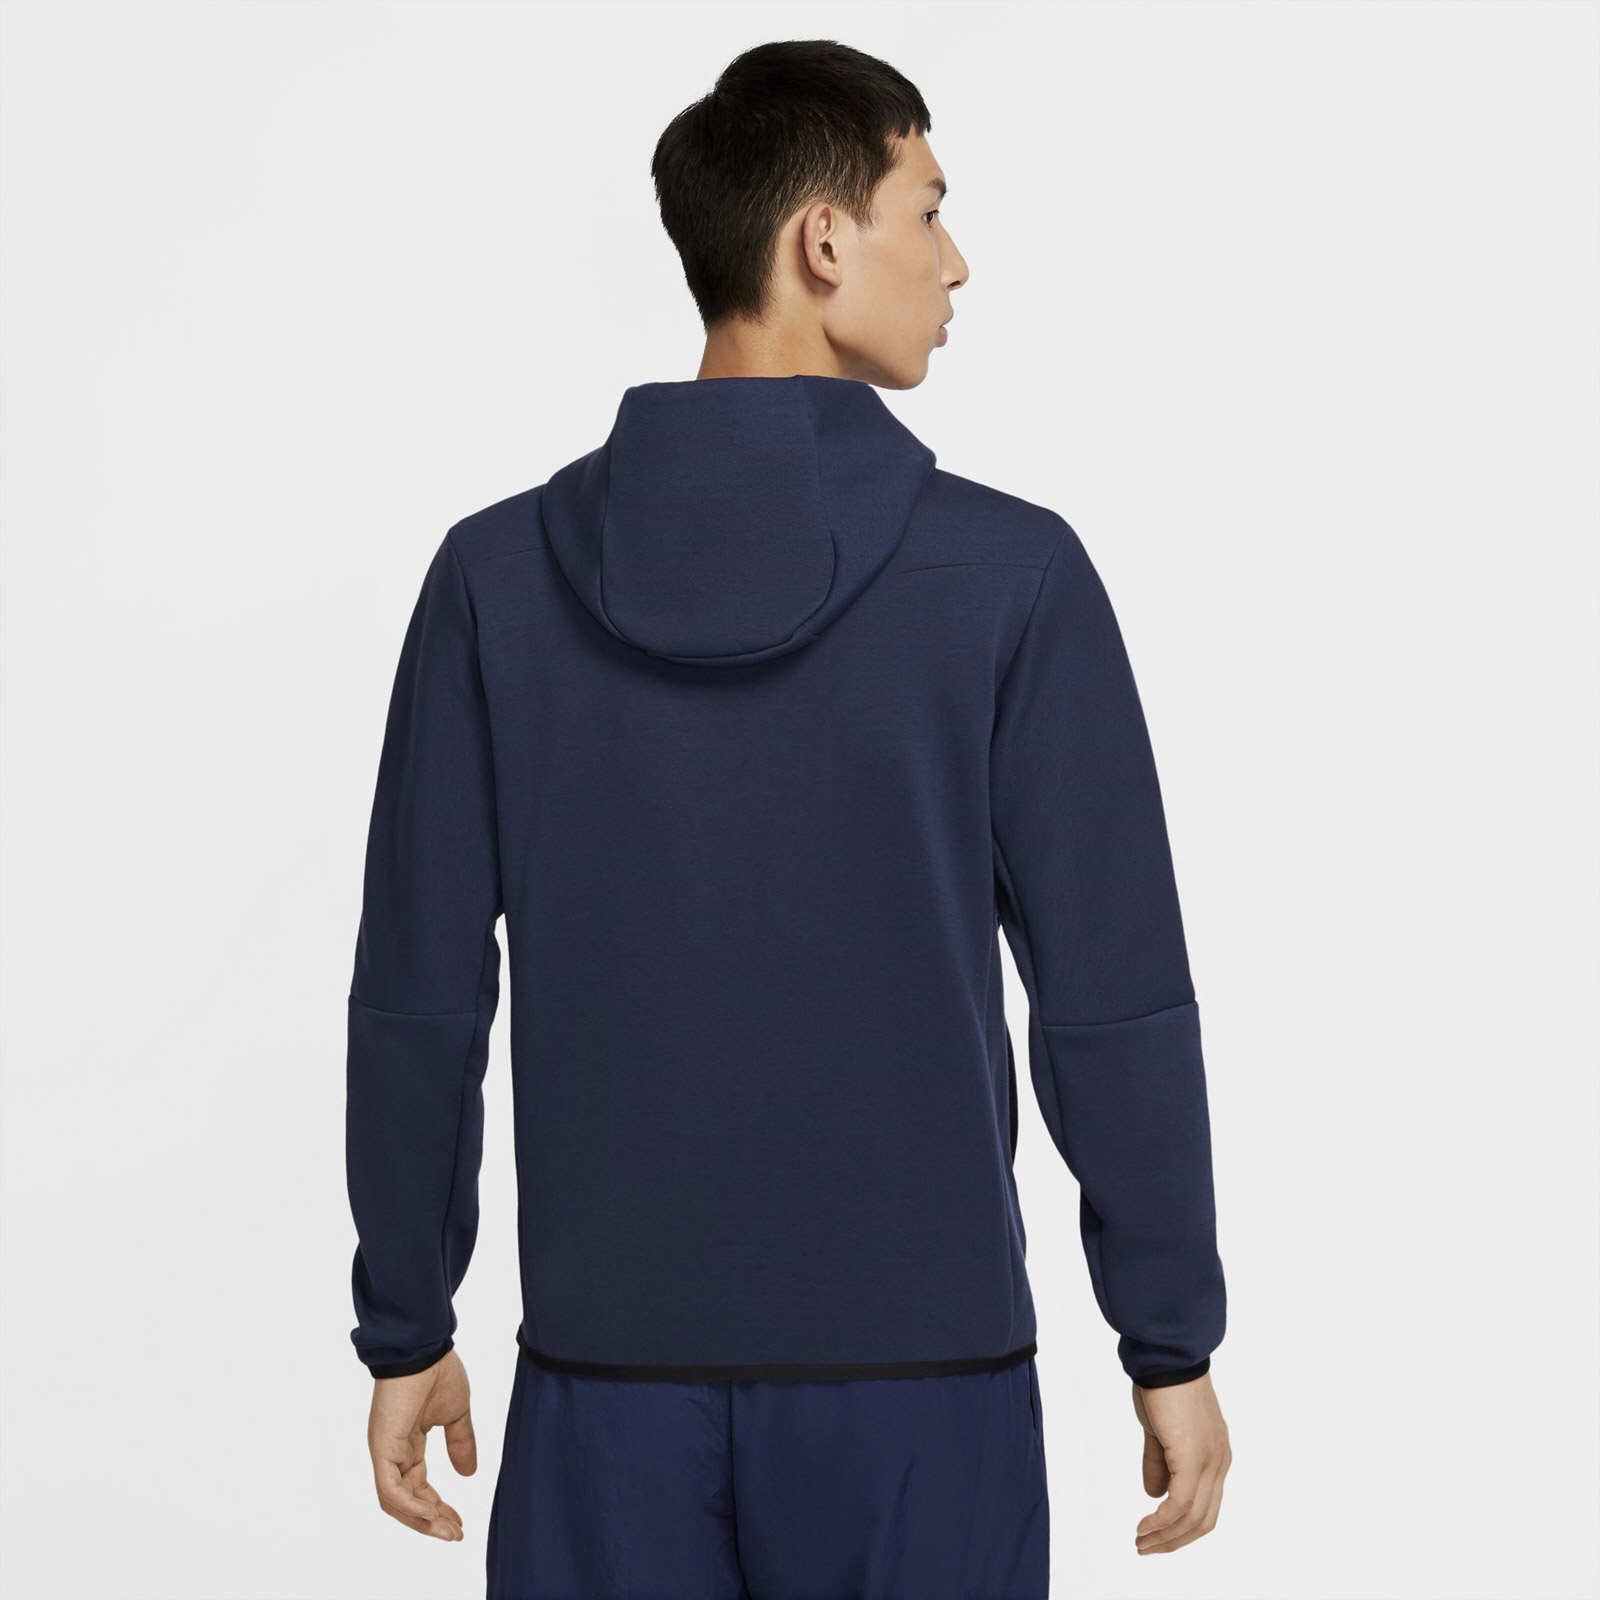 Nike Men's Swoosh Tech Fleece Full Zip Hoodie Navy | Elverys Ireland